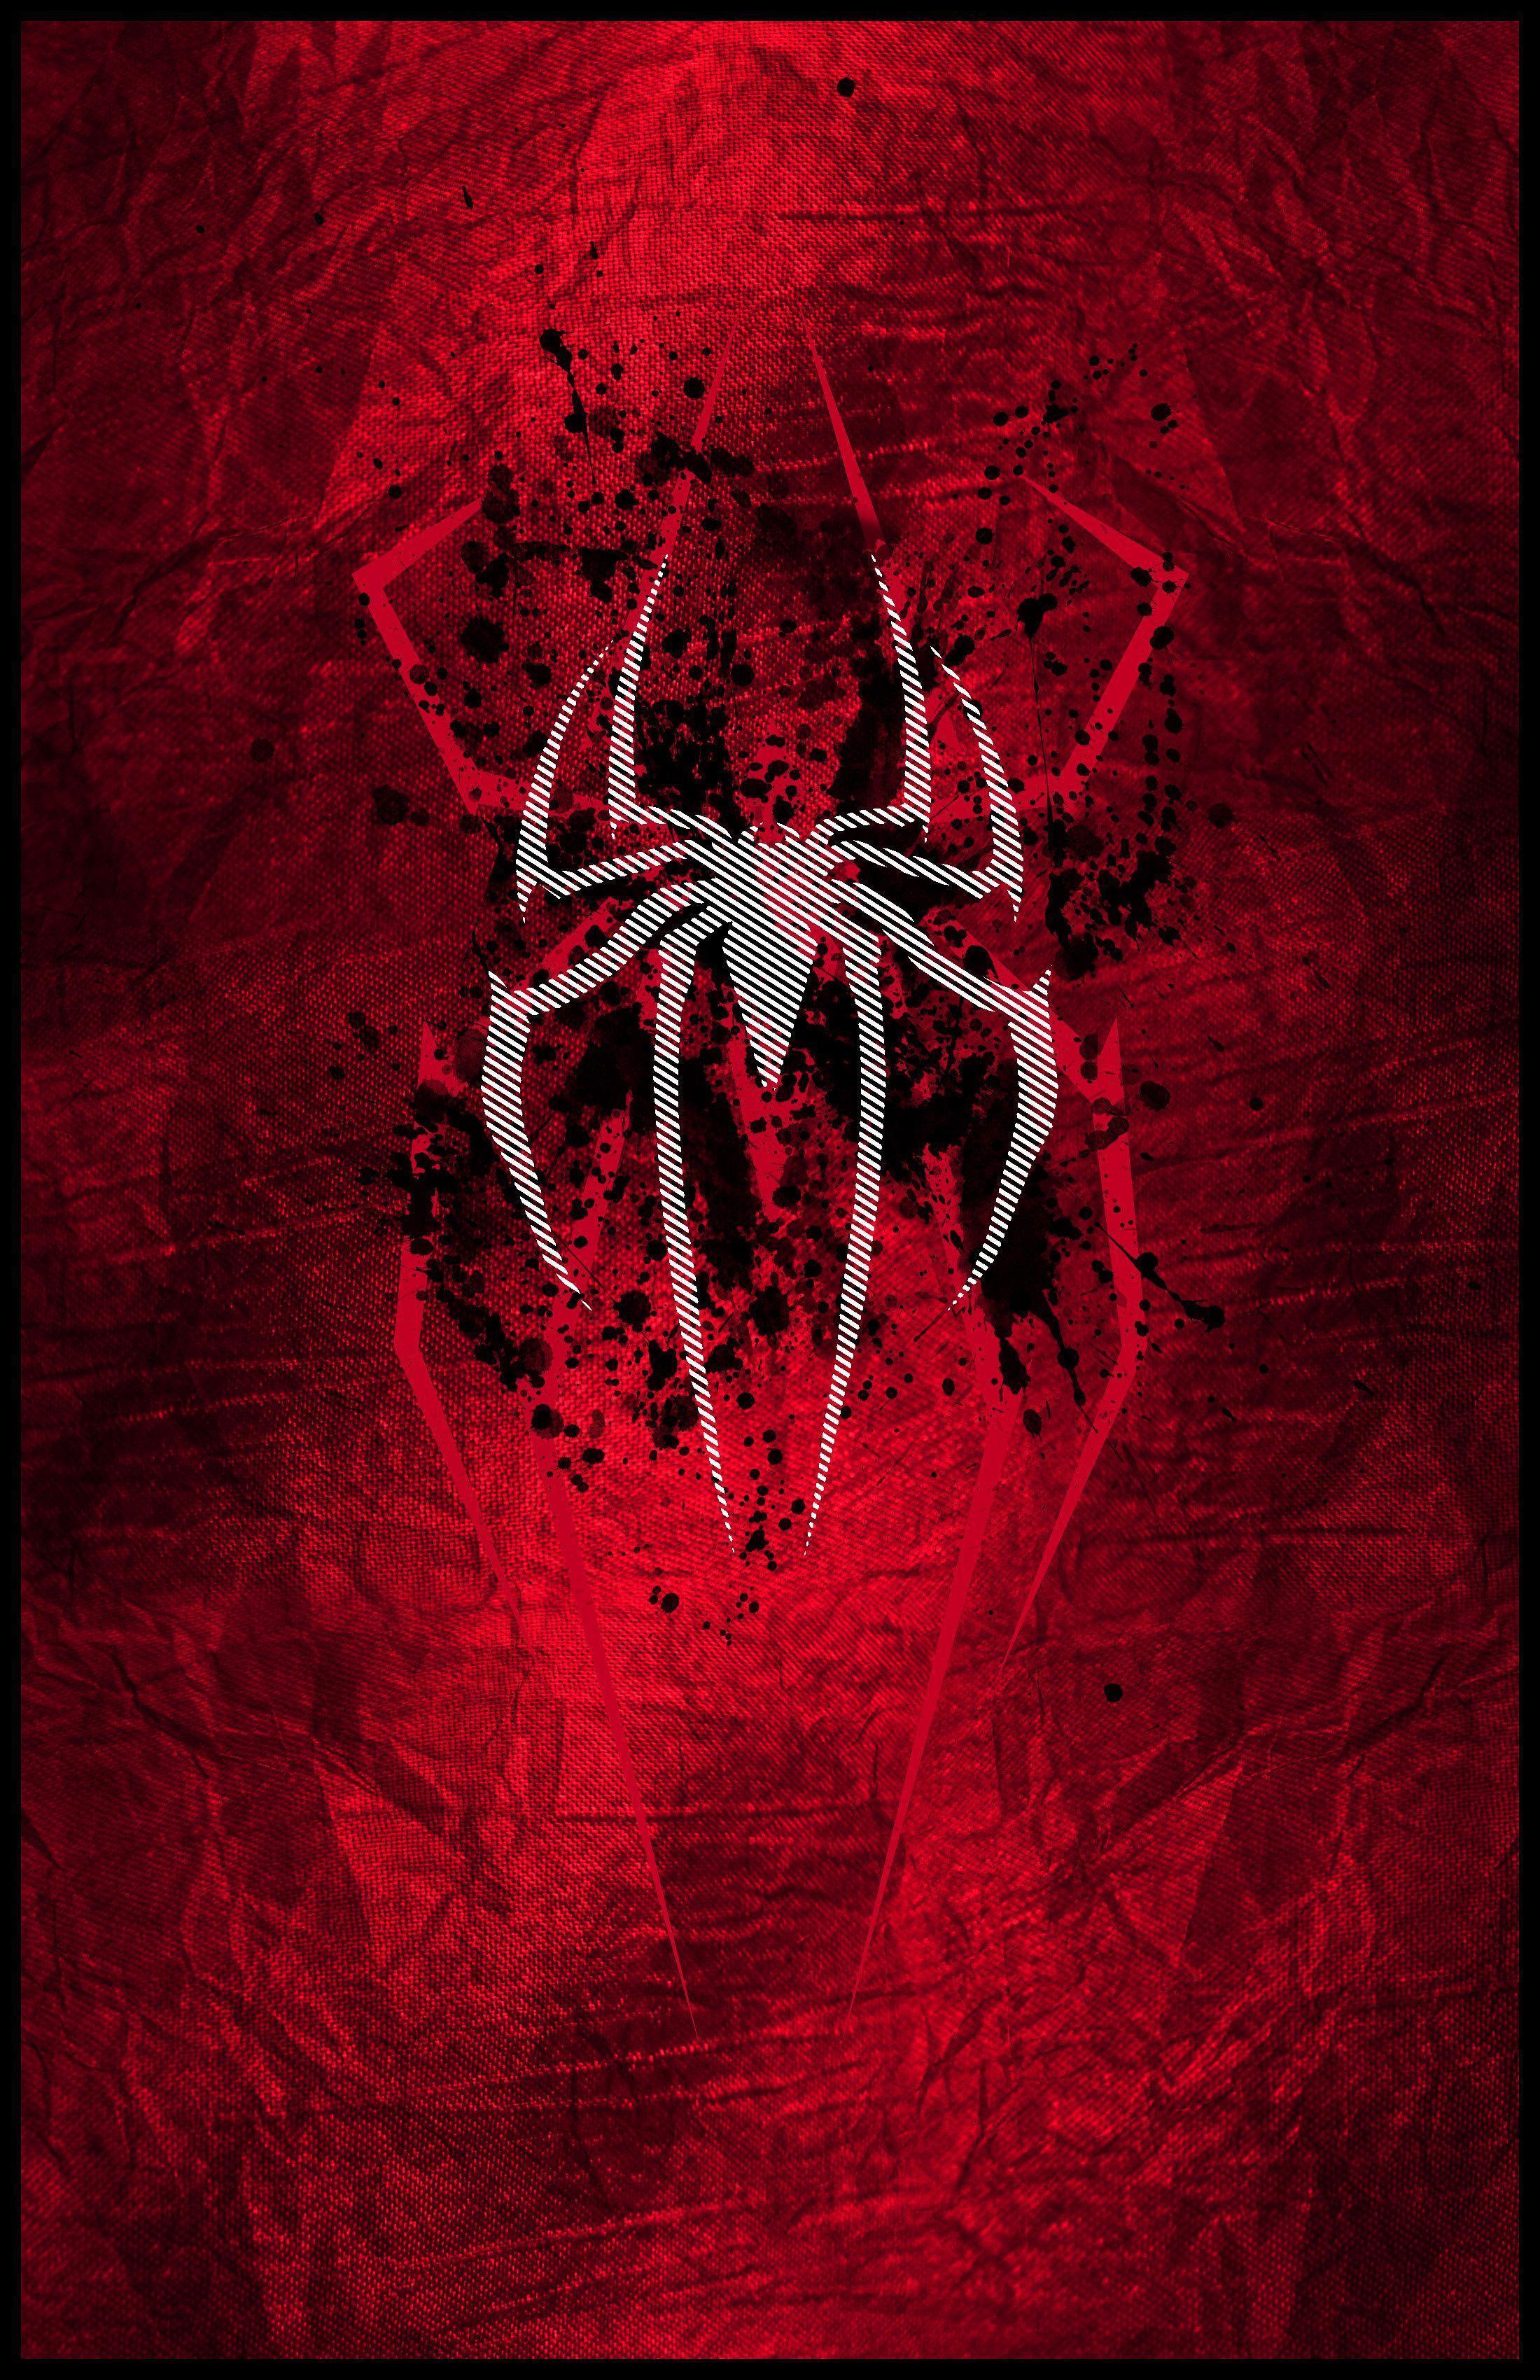 Spider-Man PS4 Wallpaper 4K